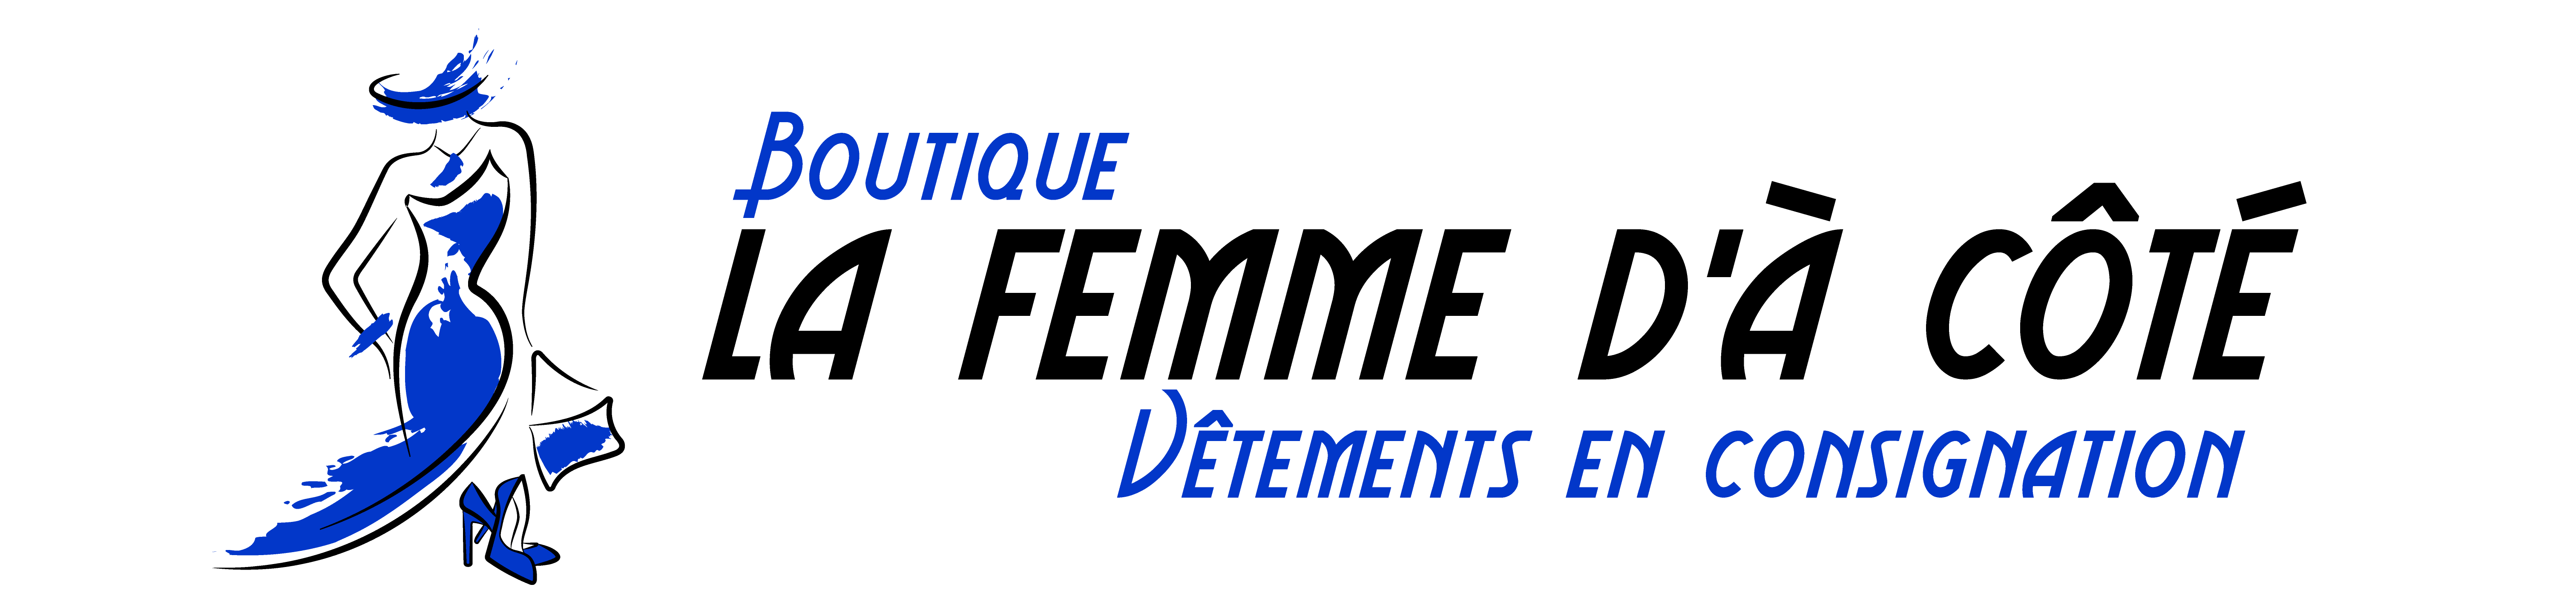 Boutique La Femme dA Cote Logo